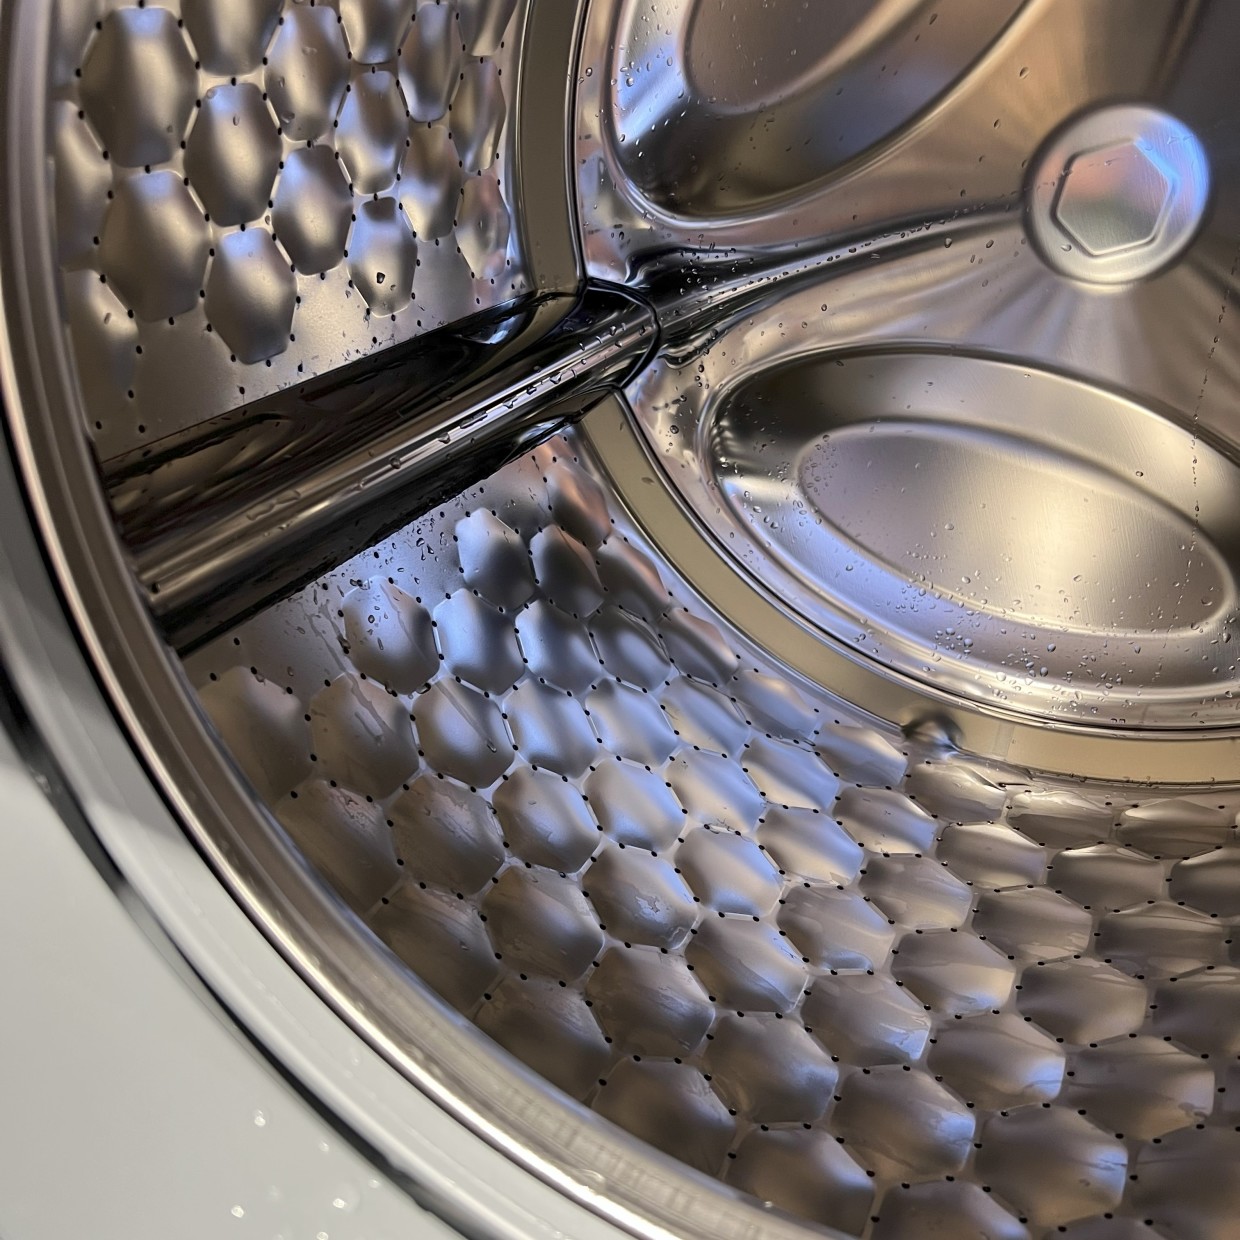  わが家のドラム式洗濯機で「年間約20000円もの電気代がムダ」になっていたワケ 